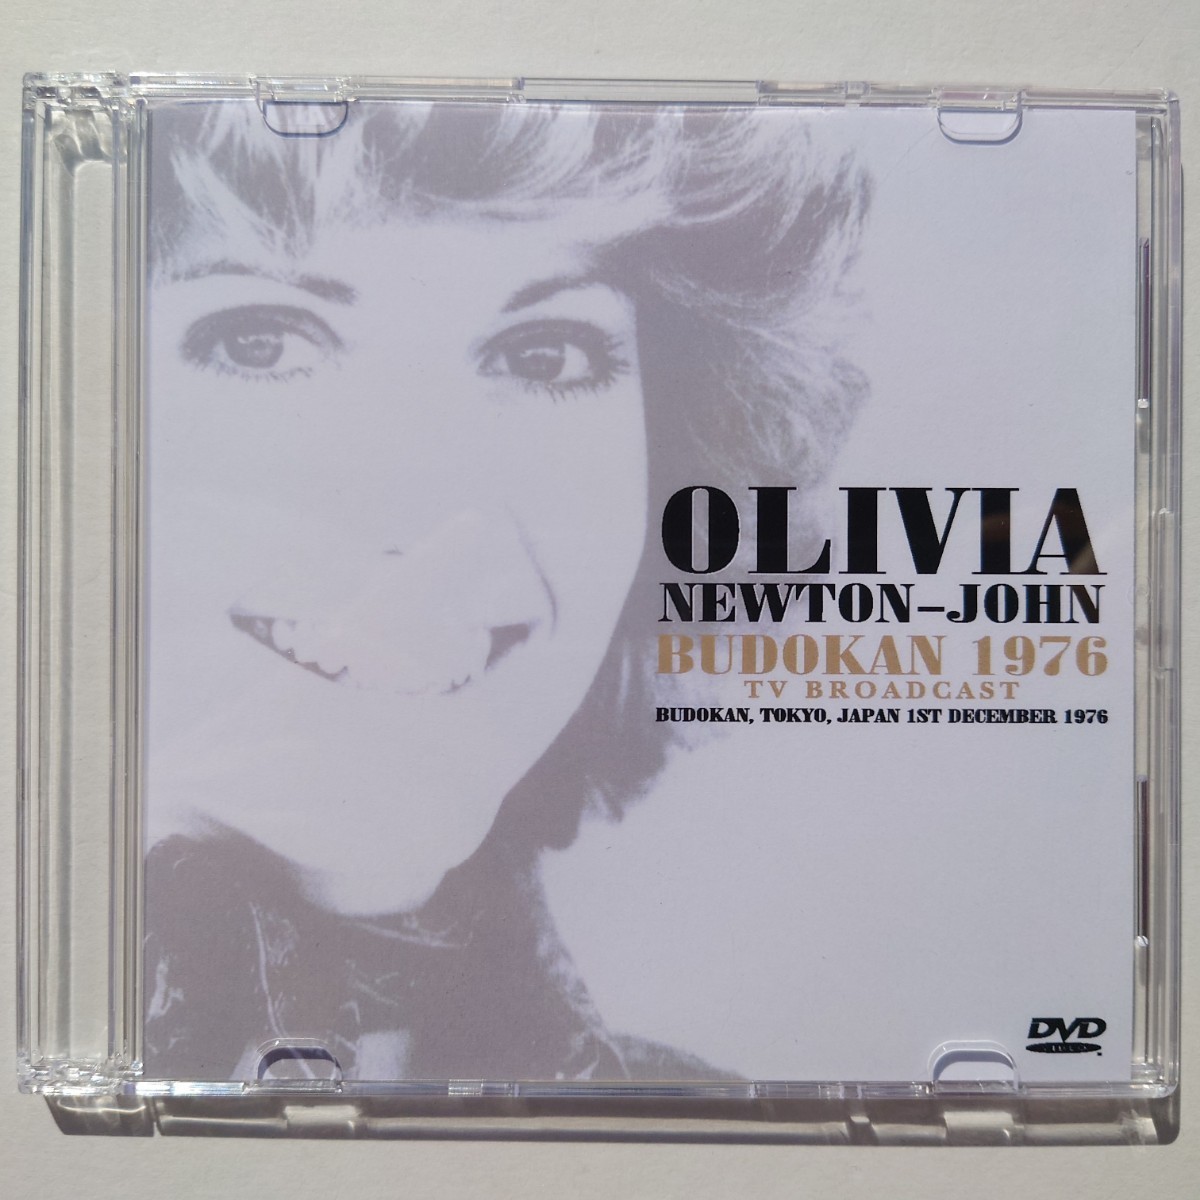 1976年 初来日公演「2枚組CD+プロショットDVD(R)」オリビア・ニュートン・ジョン_画像5